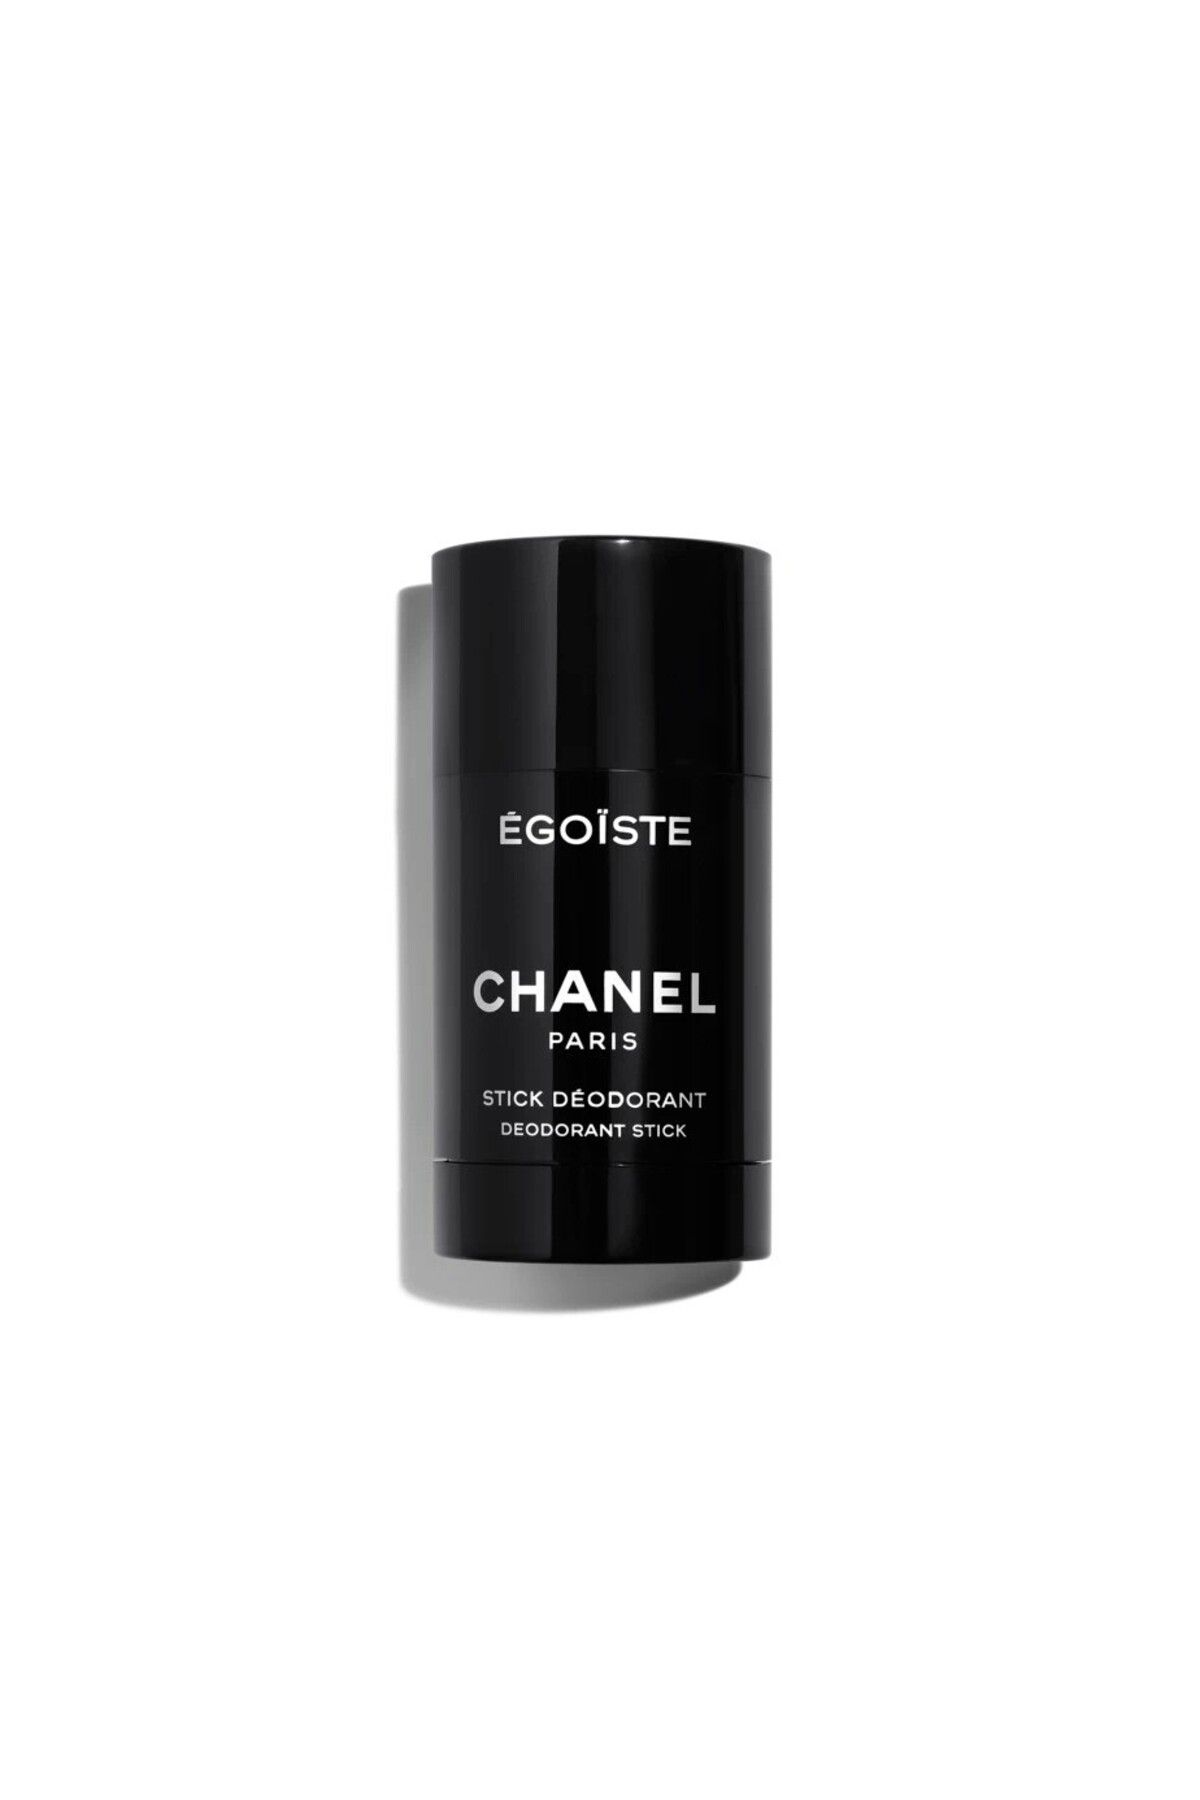 Chanel ÉGOÏSTE - Erkekler İçin Odunsu, Baharatlı Ve Amberimsi Notalar İçeren Stick Roll-on 75 ml